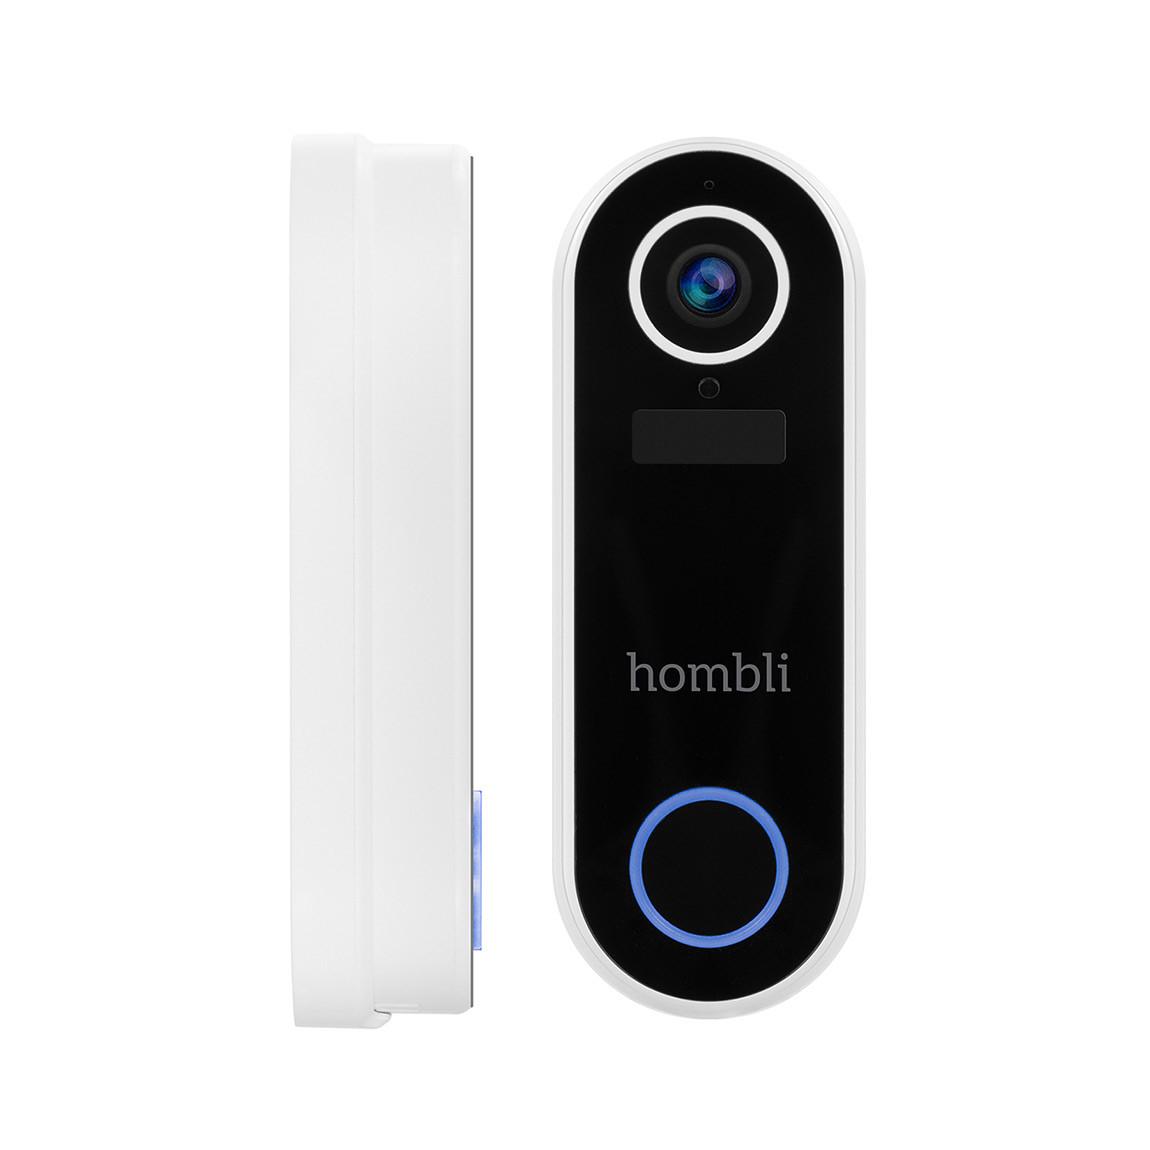 Hombli Smart Doorbell V2 - Smarte Video-Türklingel frontal und seitlich